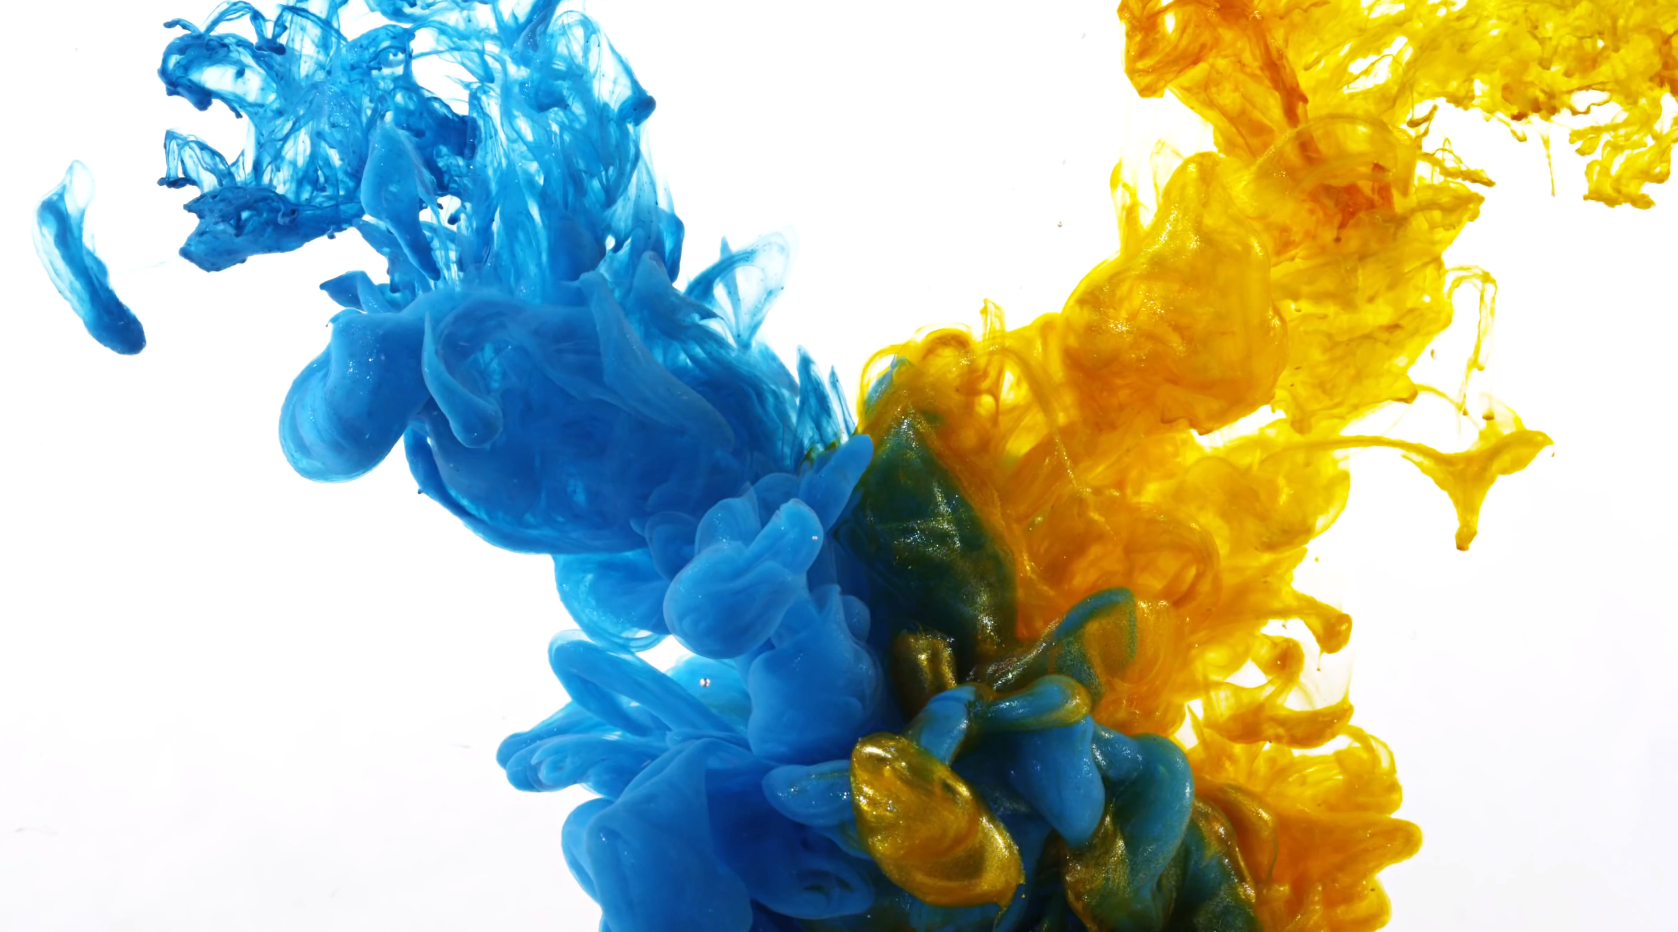 tinte in wasser tapete hd,blau,gelb,erfundener charakter,action figur